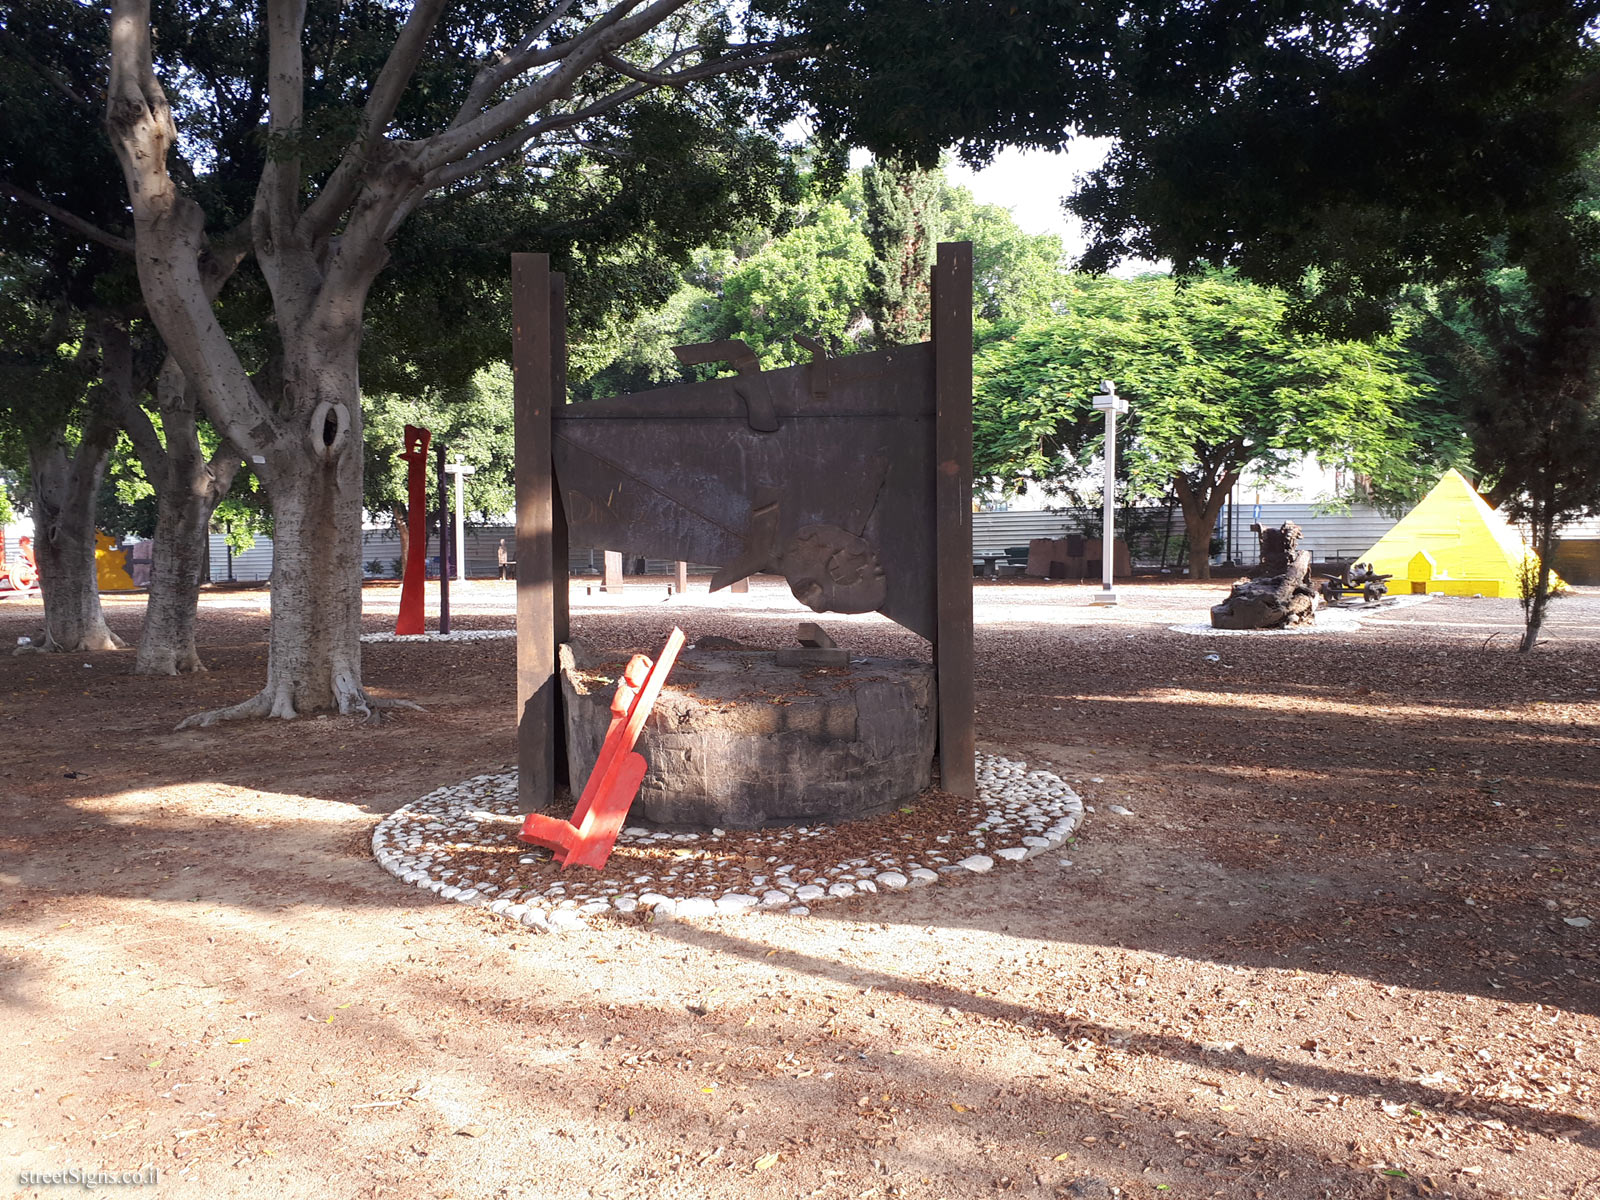 Tel Aviv - Tomarkin sculptures at Abu Nabot Park - Ding